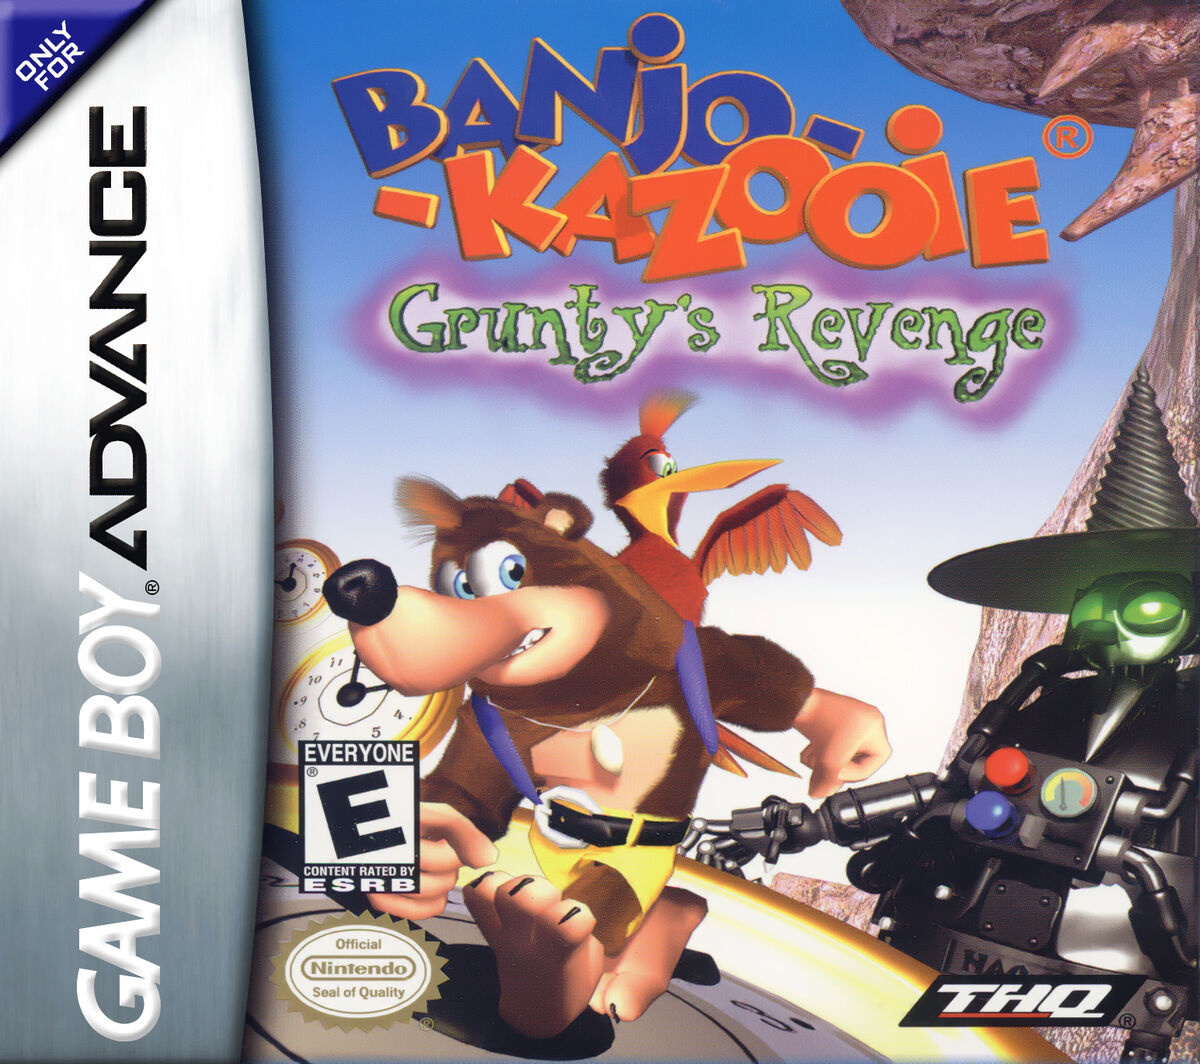 Banjo-Kazooie Beta Revival, Video Game Beta Remakes Wiki